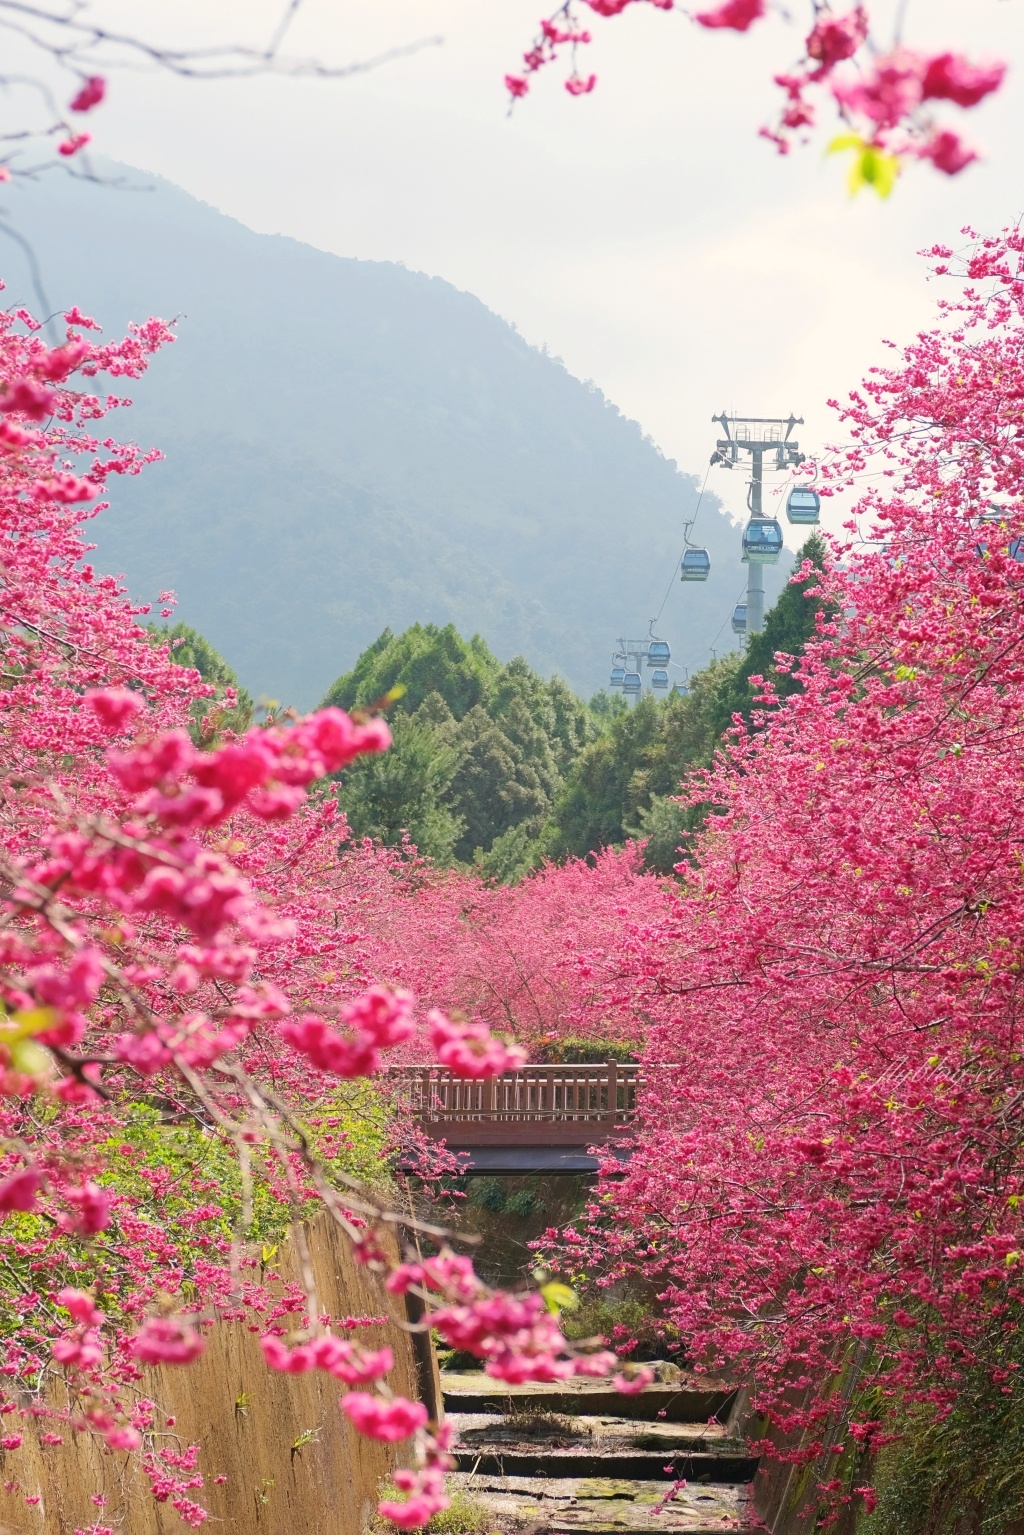 南投魚池 22九族文化村櫻花祭 唯一日本認證海外賞櫻名所 5000多株櫻花樹盛開中 飛天璇的口袋